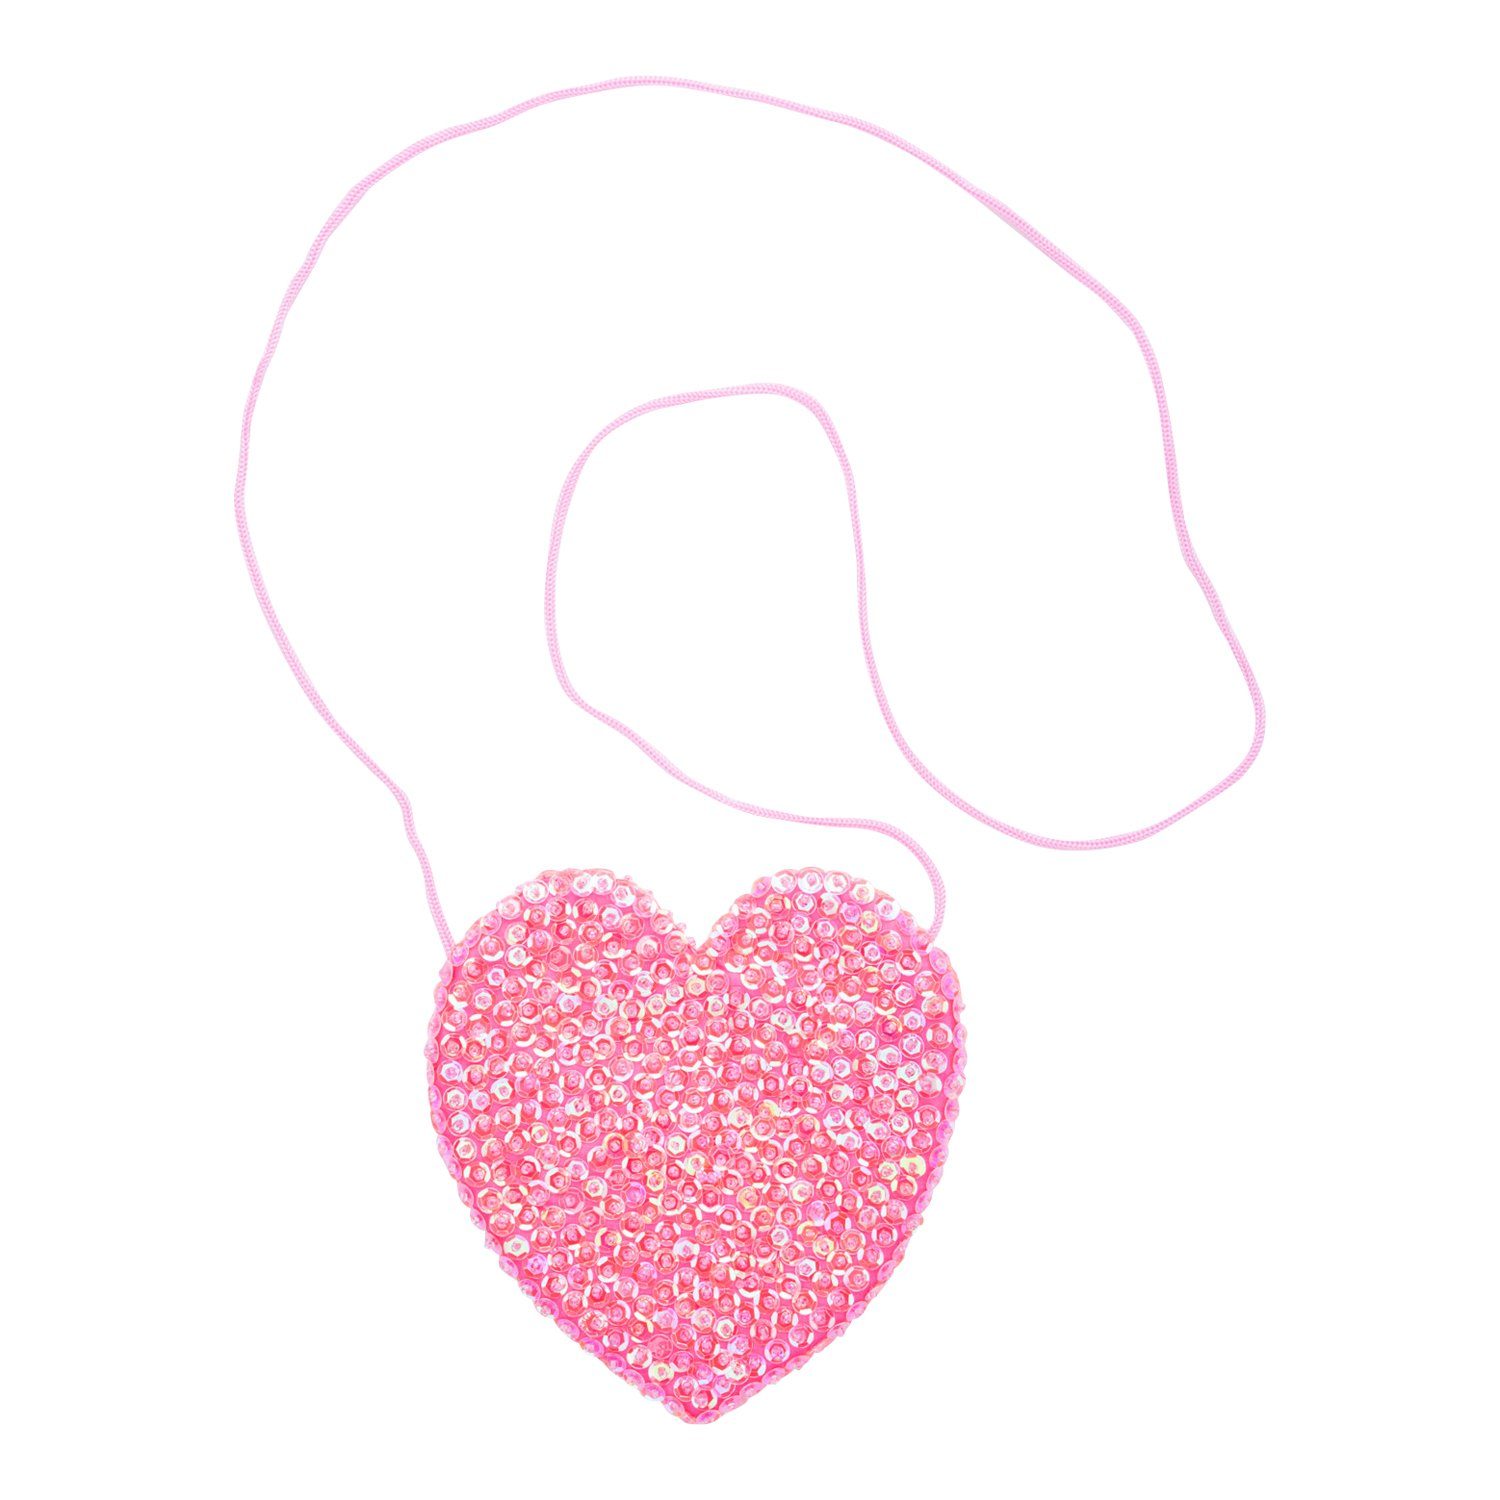 Children's Small Sparkly Sequin Heart Purse - Love-Shu-Shi